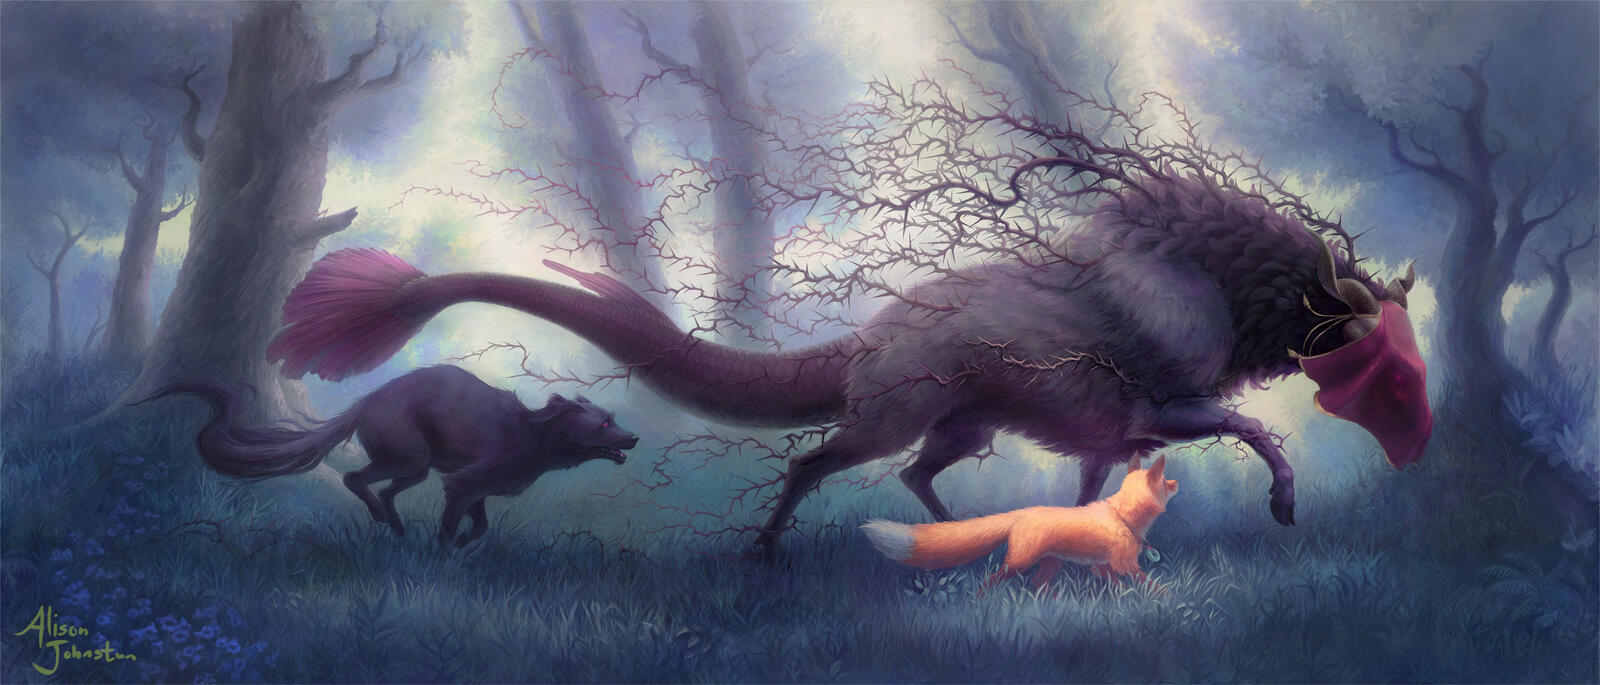 Сказочное существо бежит пол лесу с волком и лисой